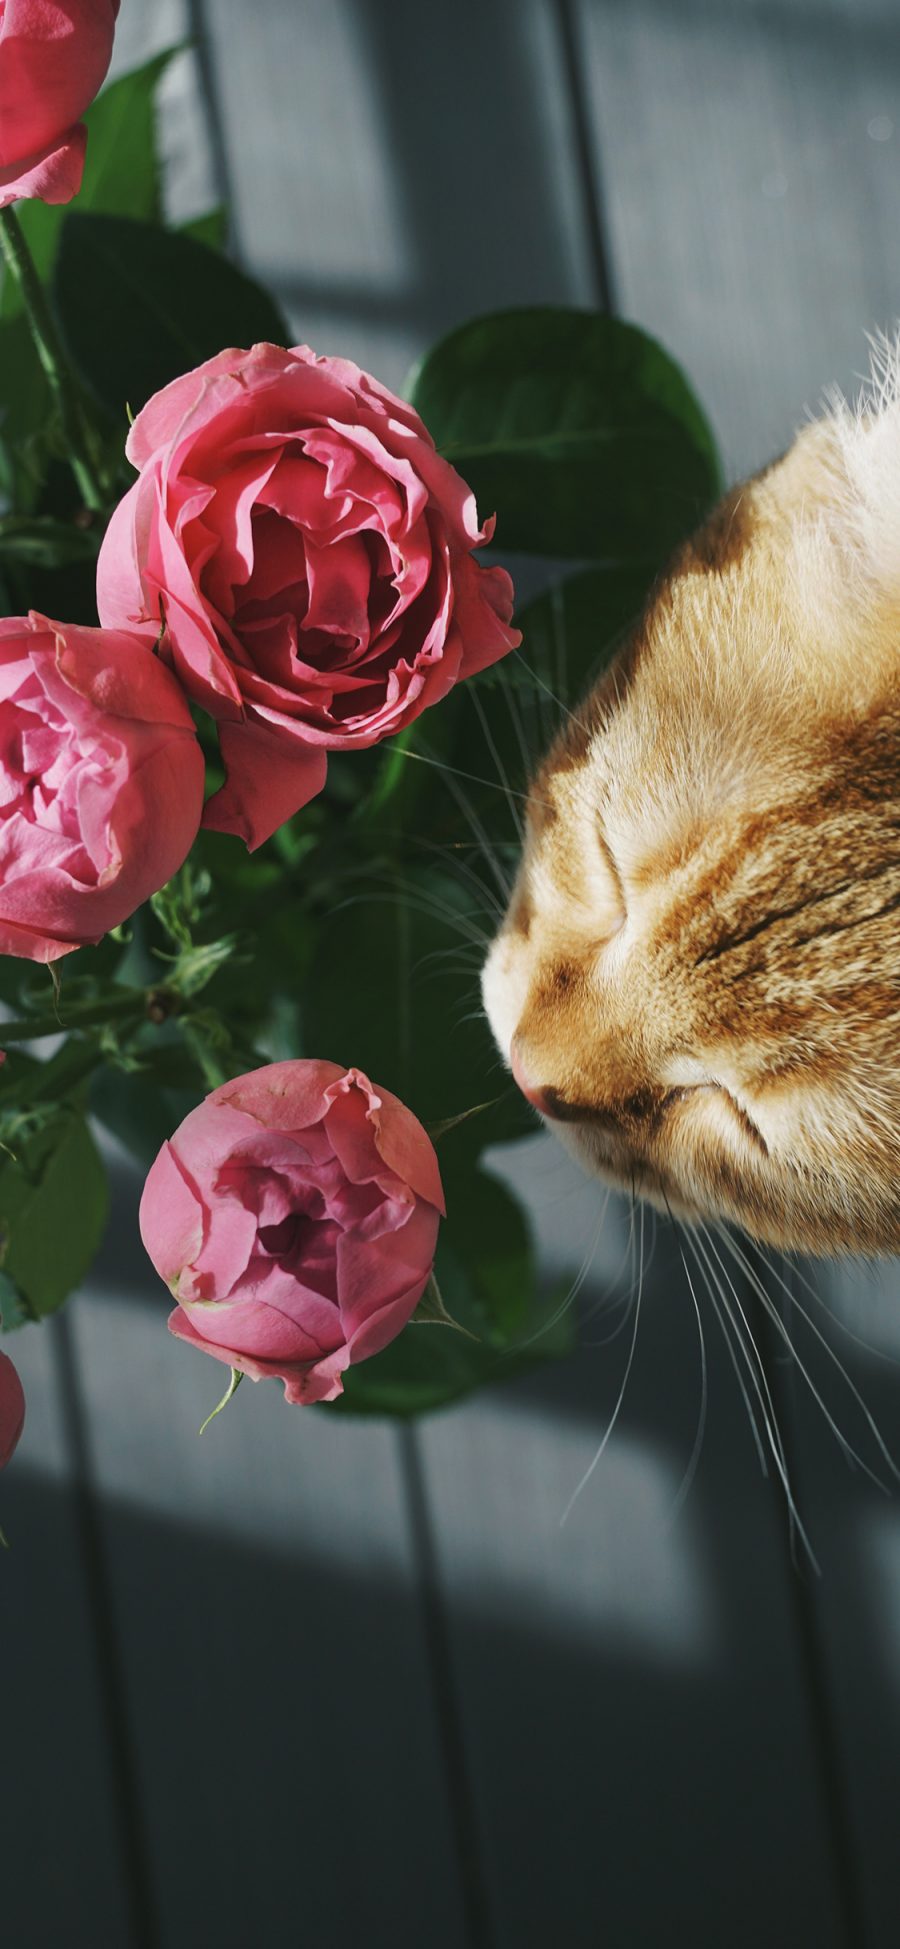 [2436×1125]猫咪 宠物 花束 鲜花 苹果手机壁纸图片